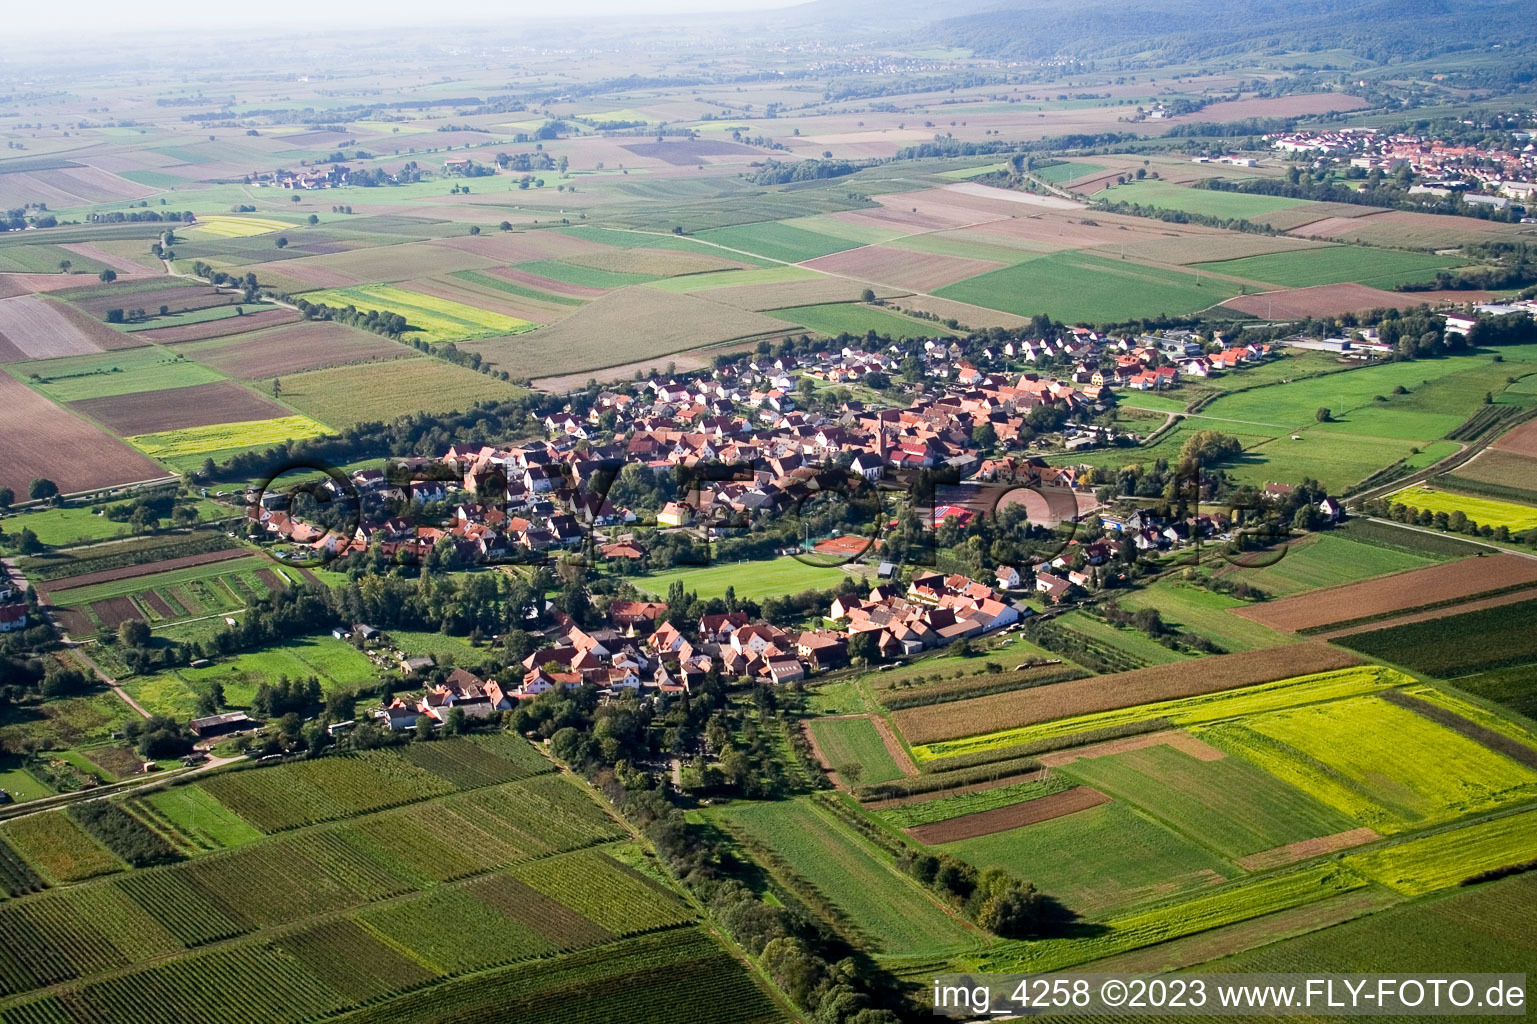 Quartier Drusweiler in Kapellen-Drusweiler dans le département Rhénanie-Palatinat, Allemagne du point de vue du drone